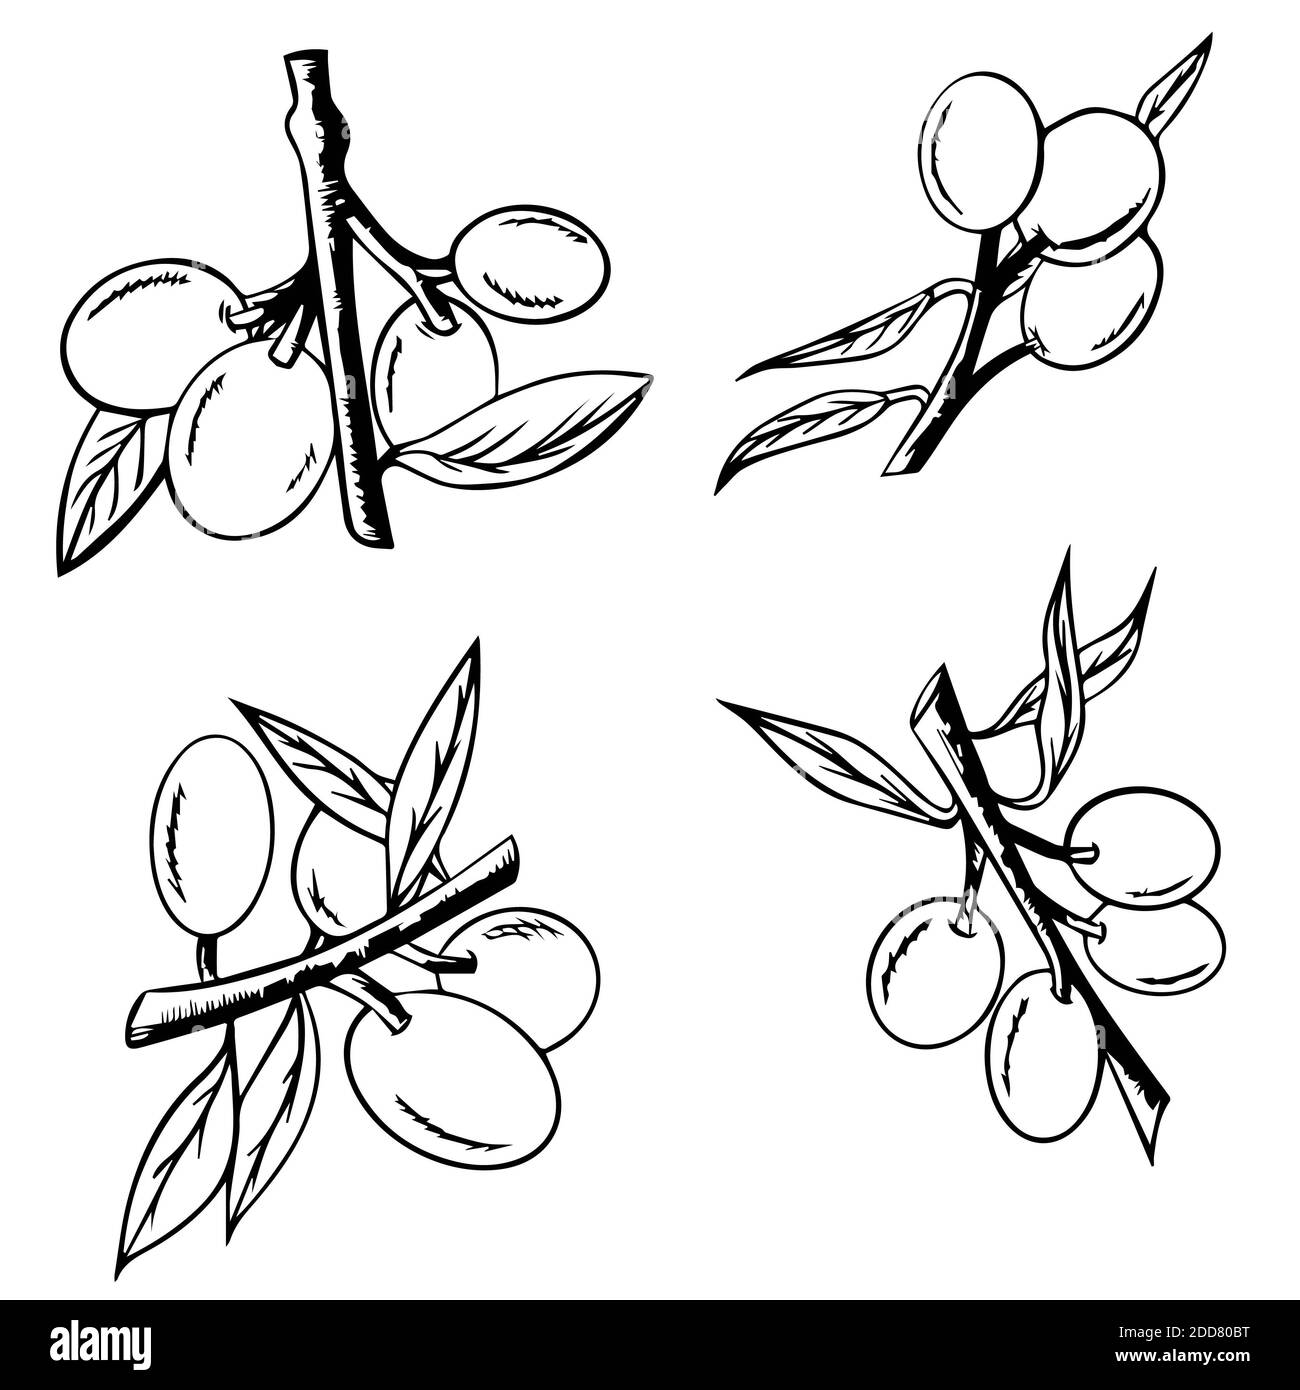 Ensemble de branches d'arbre esquissé avec olives, branches d'olive isolées sur fond blanc, illustration vectorielle dessinée à la main. Symbole ou logo pour l'huile d'olive Banque D'Images